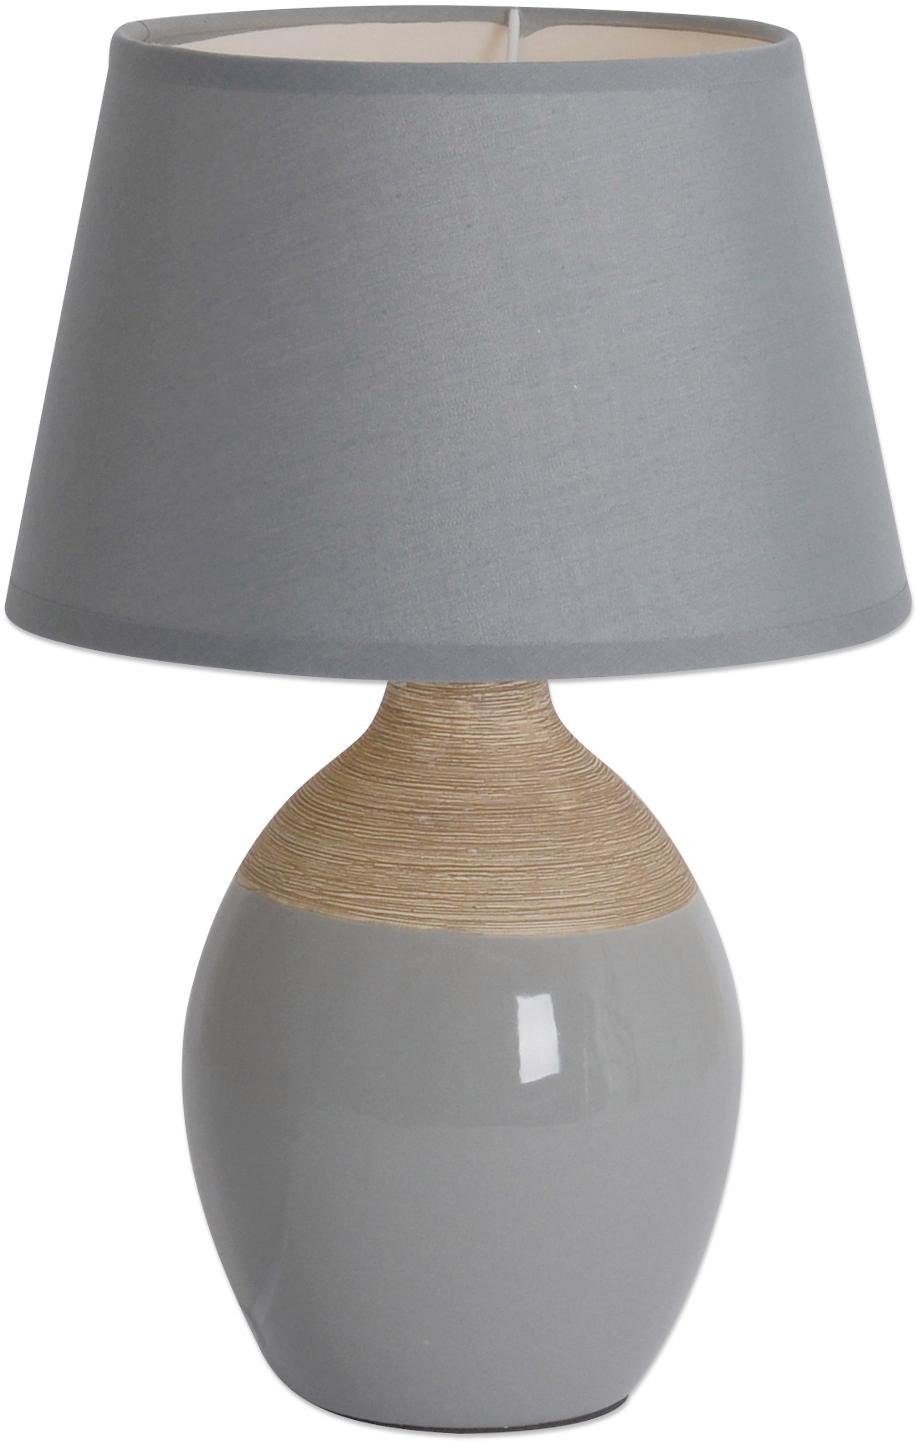 näve Tischleuchte Talia, ohne Leuchtmittel, Keramik, E14 max. 60W, Kippschalter, 2- farbiger Fuß (grau und natur) | Tischlampen